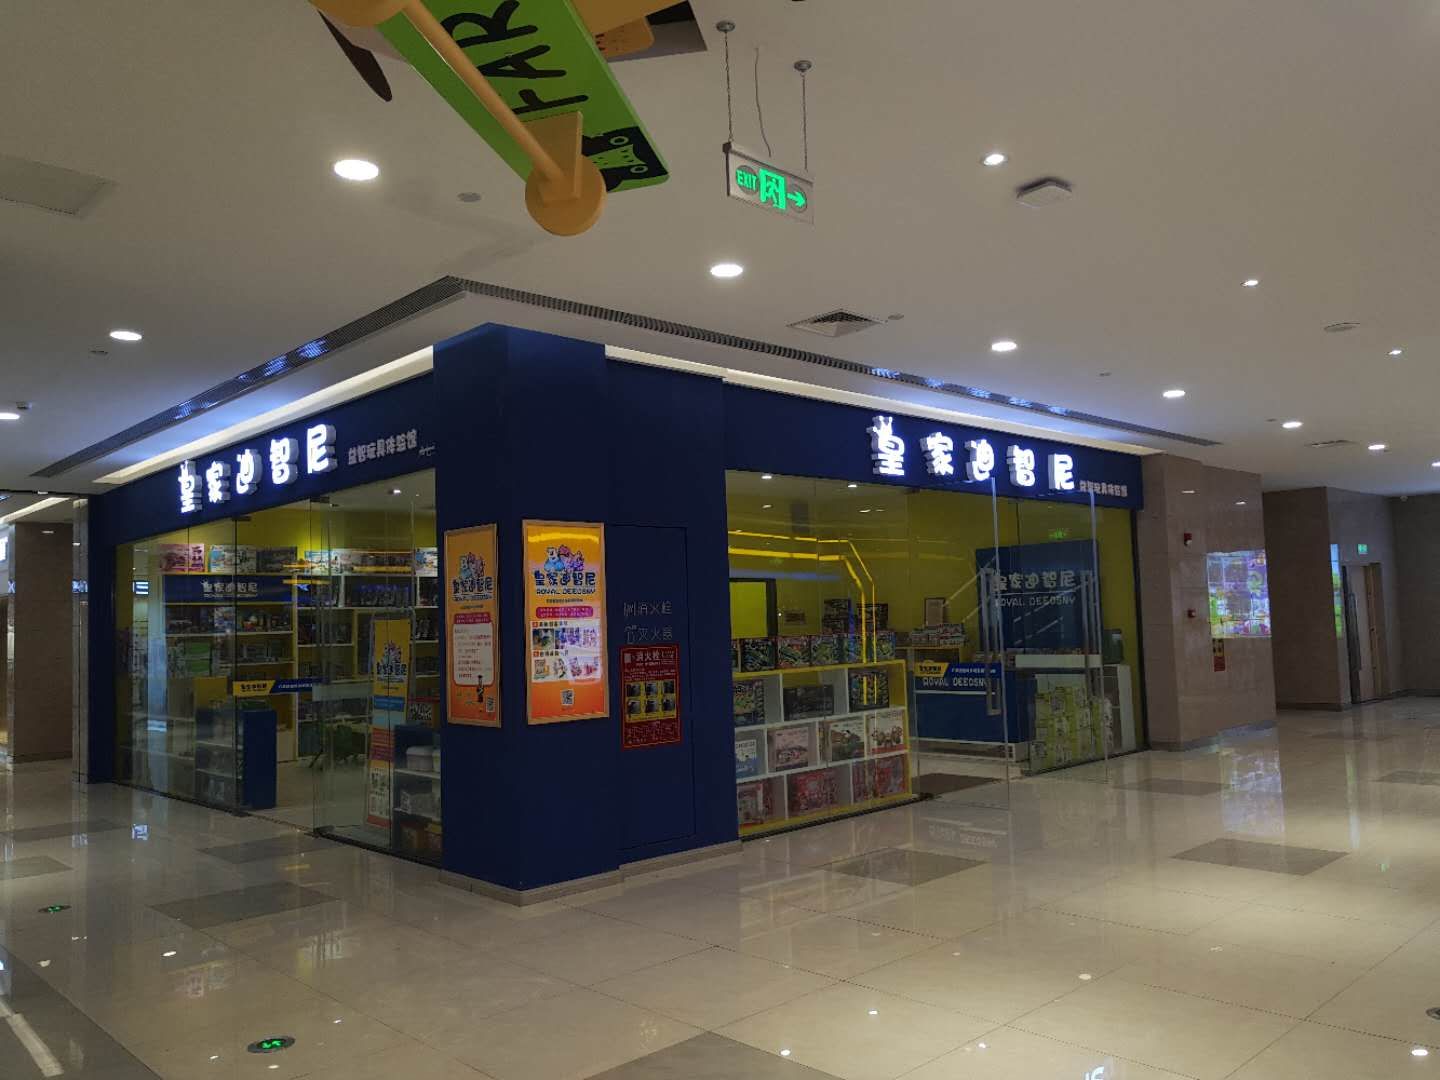 预祝皇家迪智尼玩具加盟店在郑州金水悦城开业兴隆  